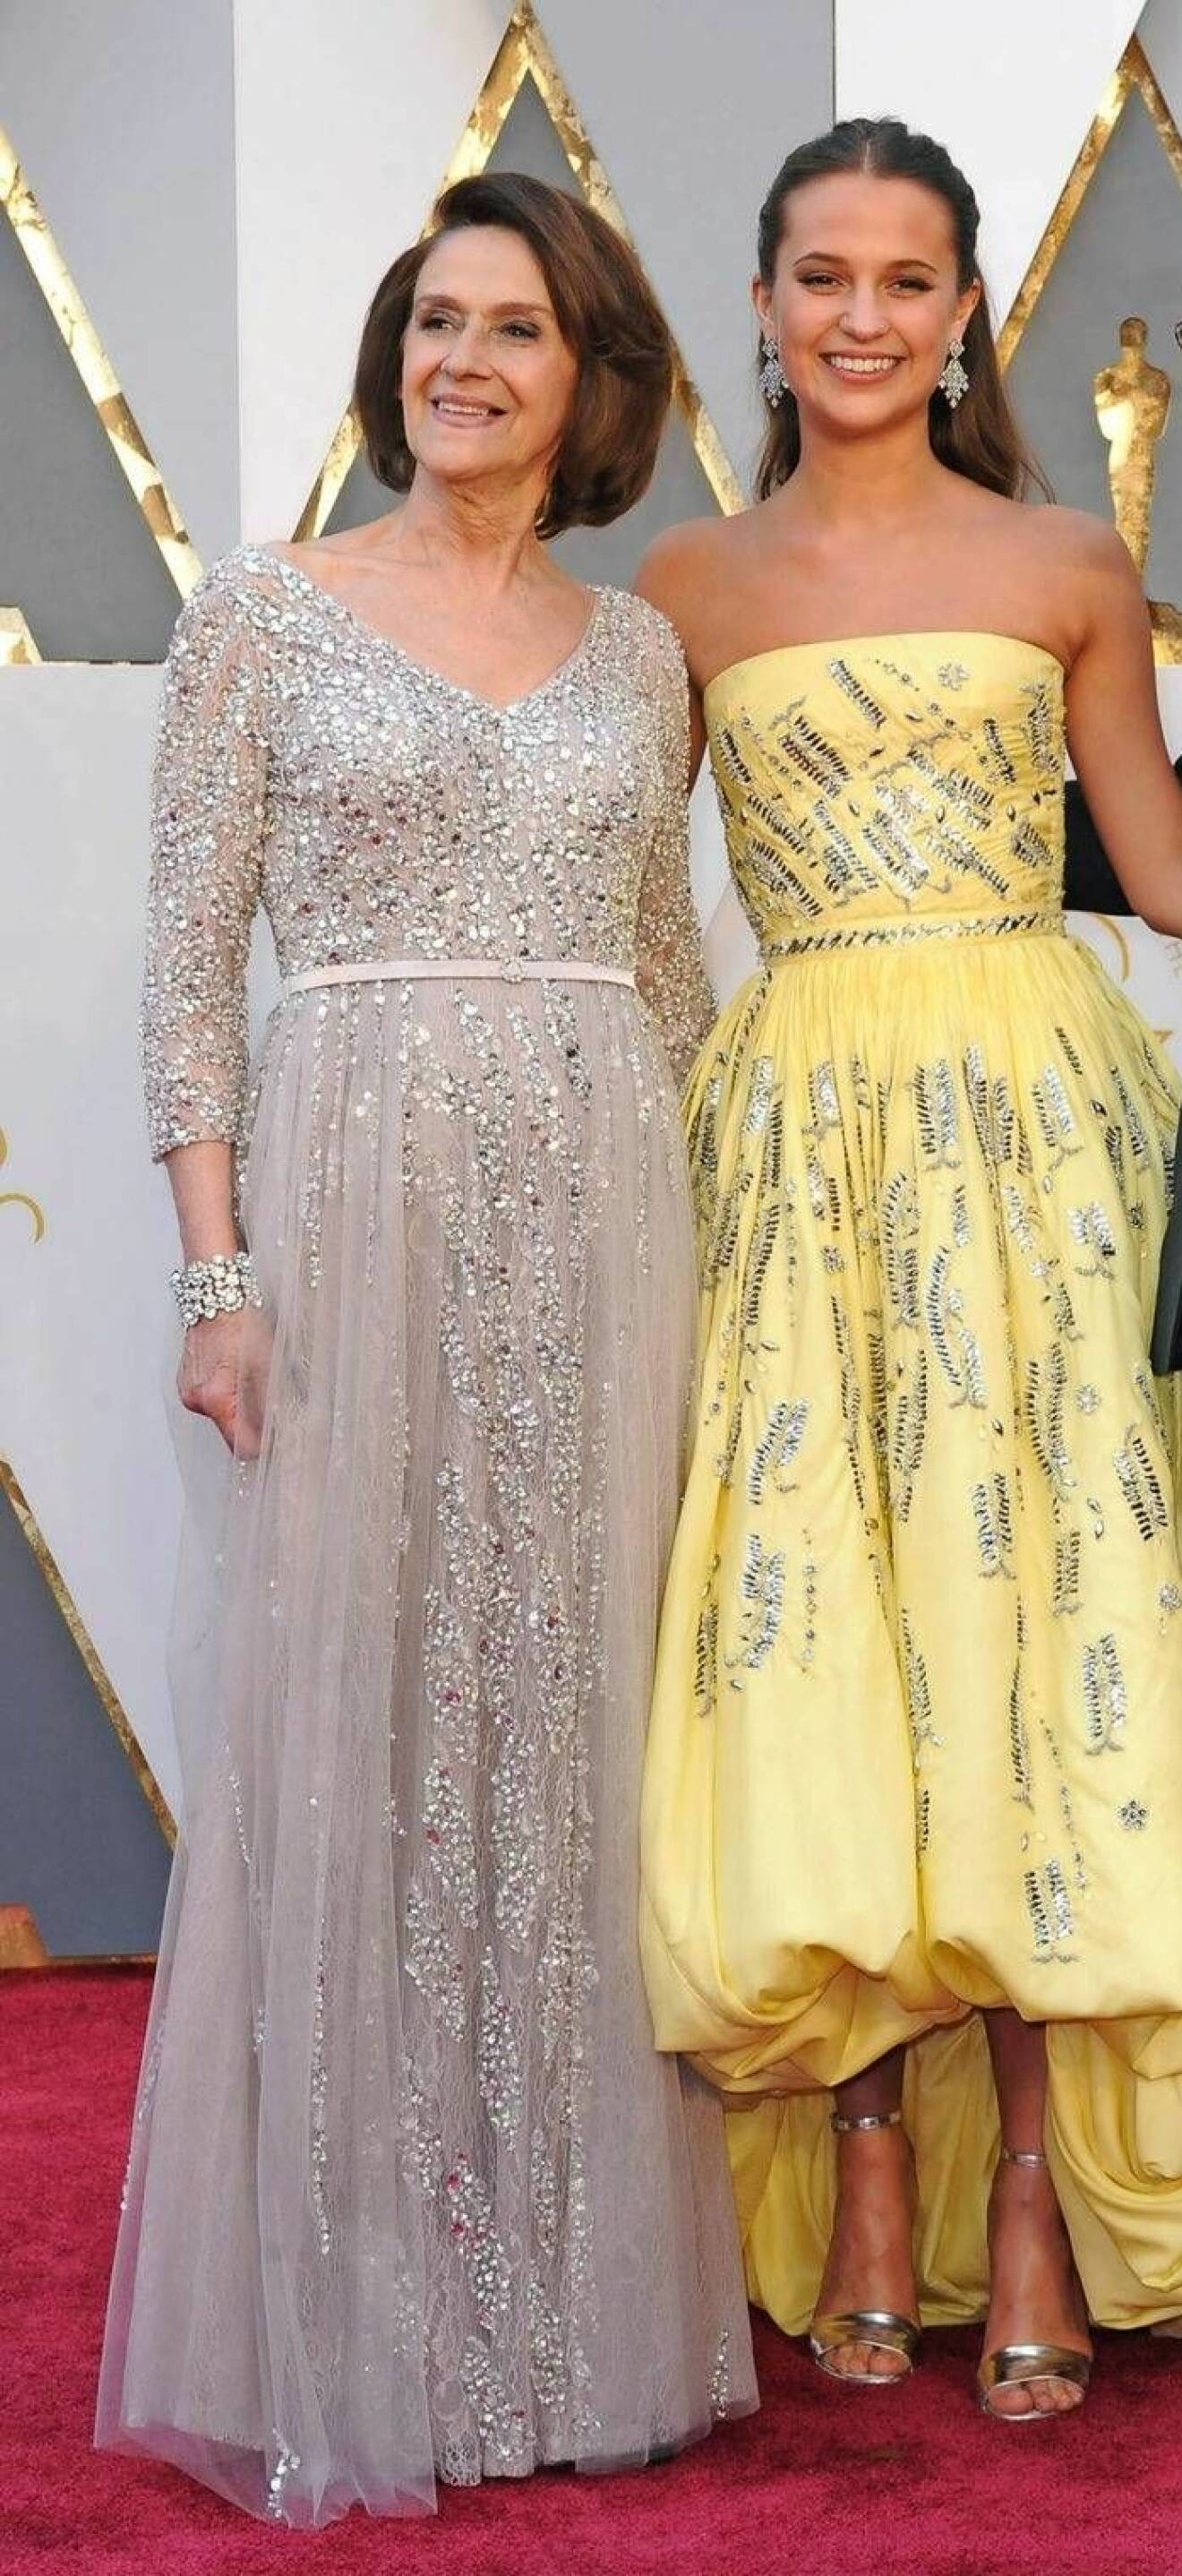 Maria Fahl Vikander tillsammans med dottern Alicia Vikander på Oscarsgalan 2016